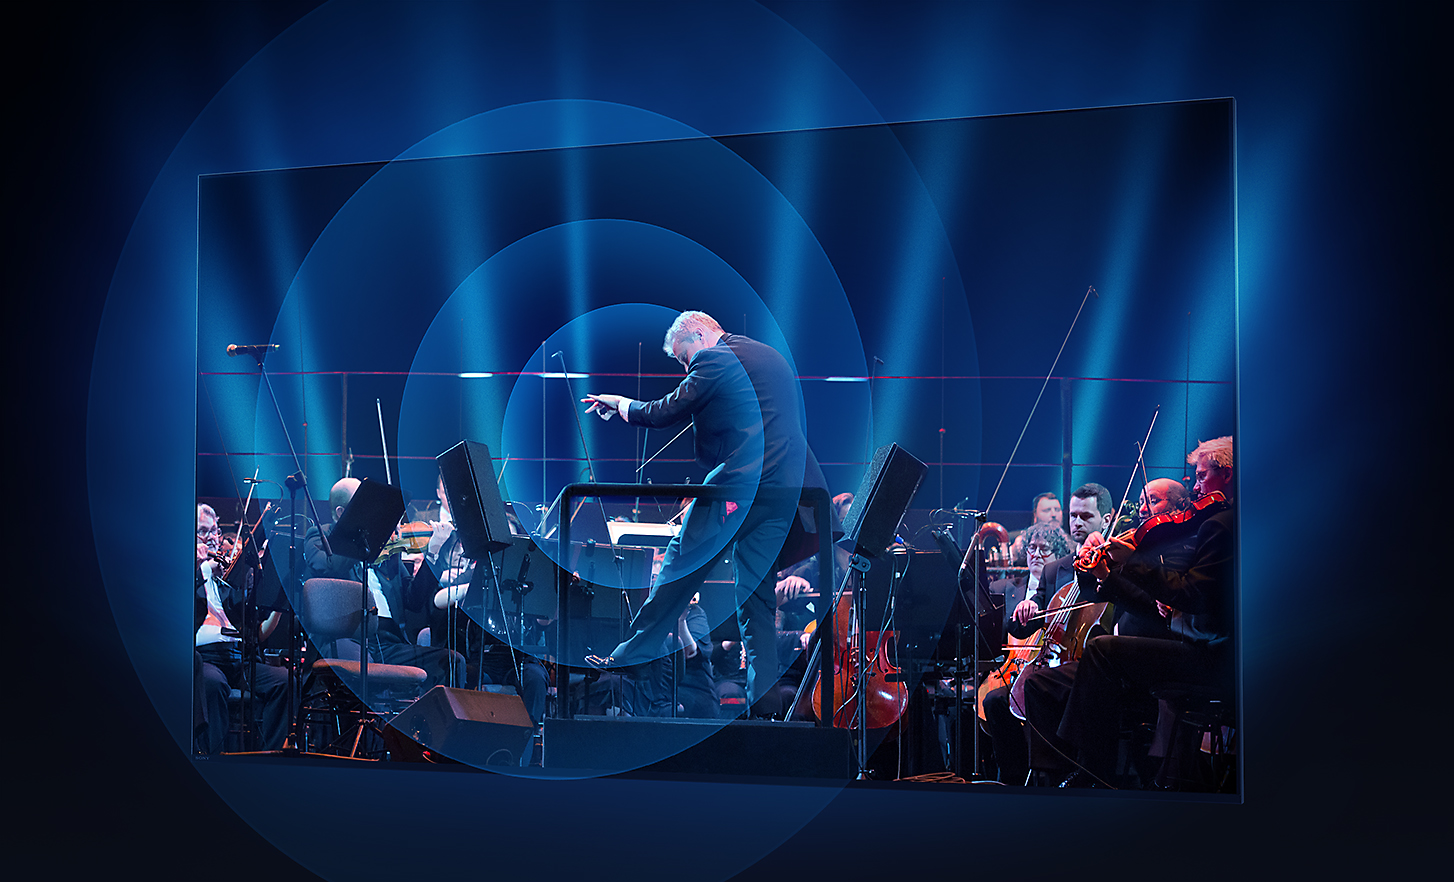 BRAVIA 電視螢幕上顯示演奏中的指揮和管弦樂團，聲波從螢幕中心以同心圓向外擴散